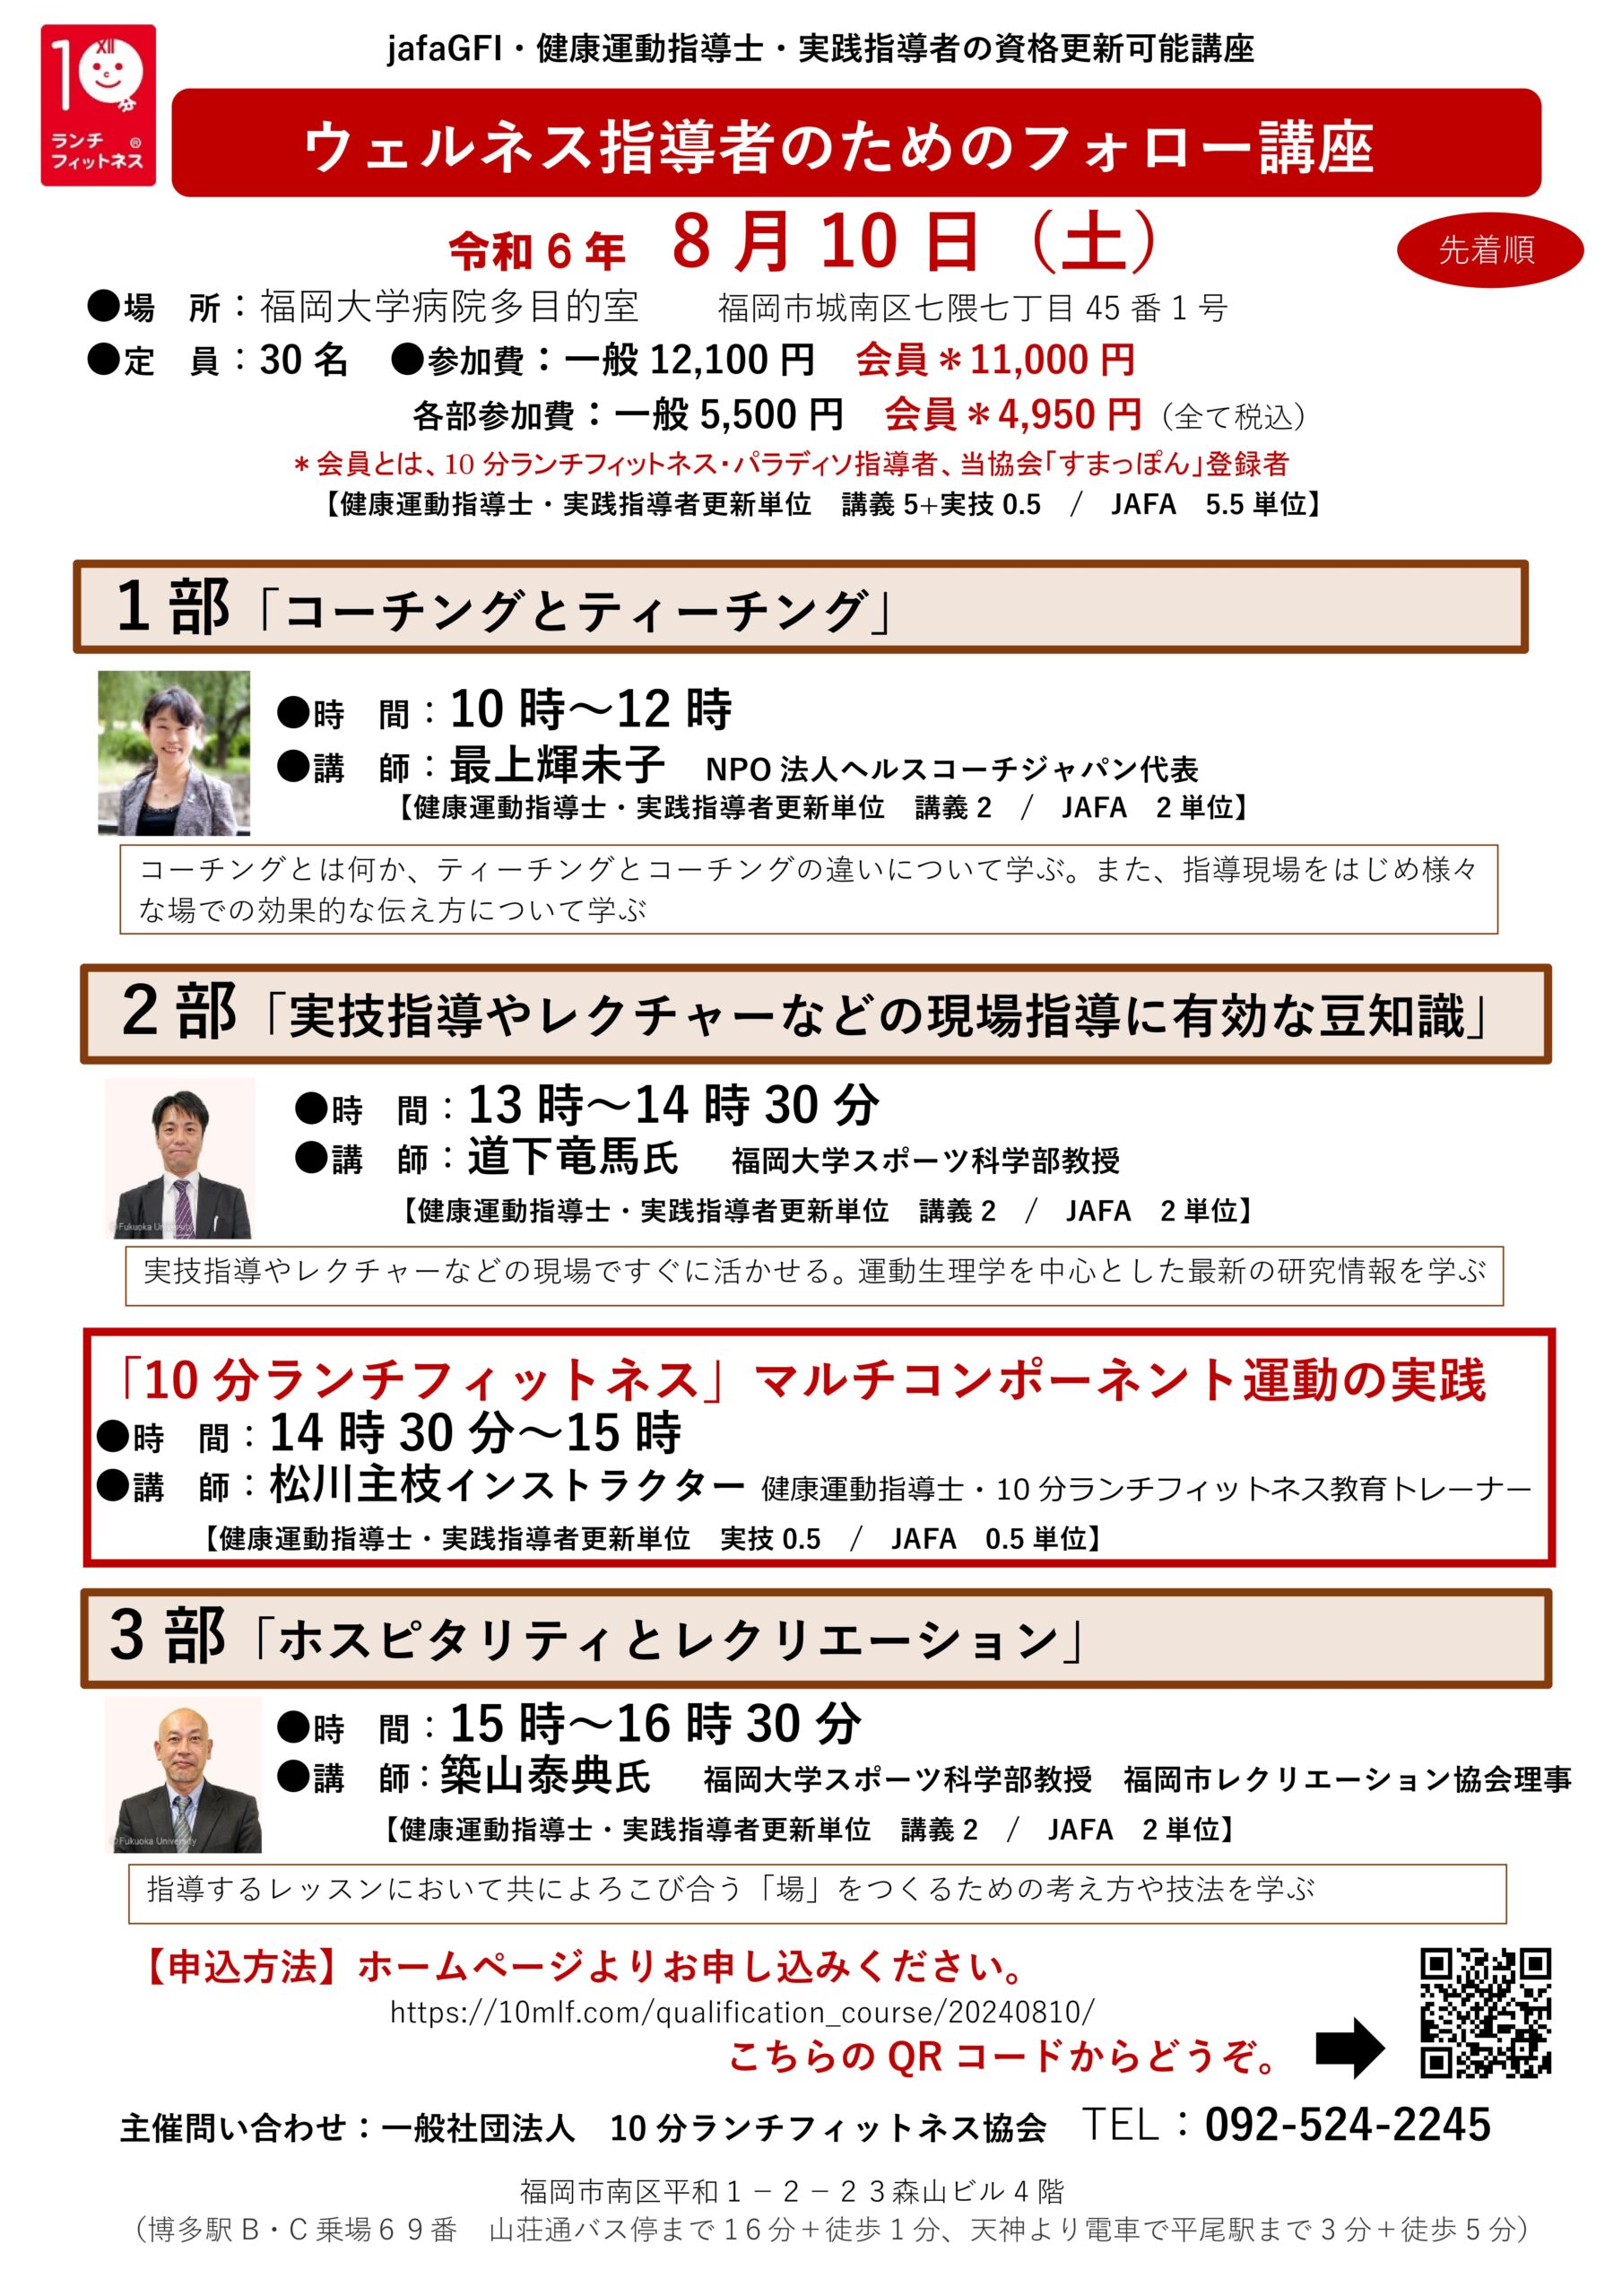 8月10日福岡大学病院で「ウェルネス指導者のためのフォロー講座」を開催します